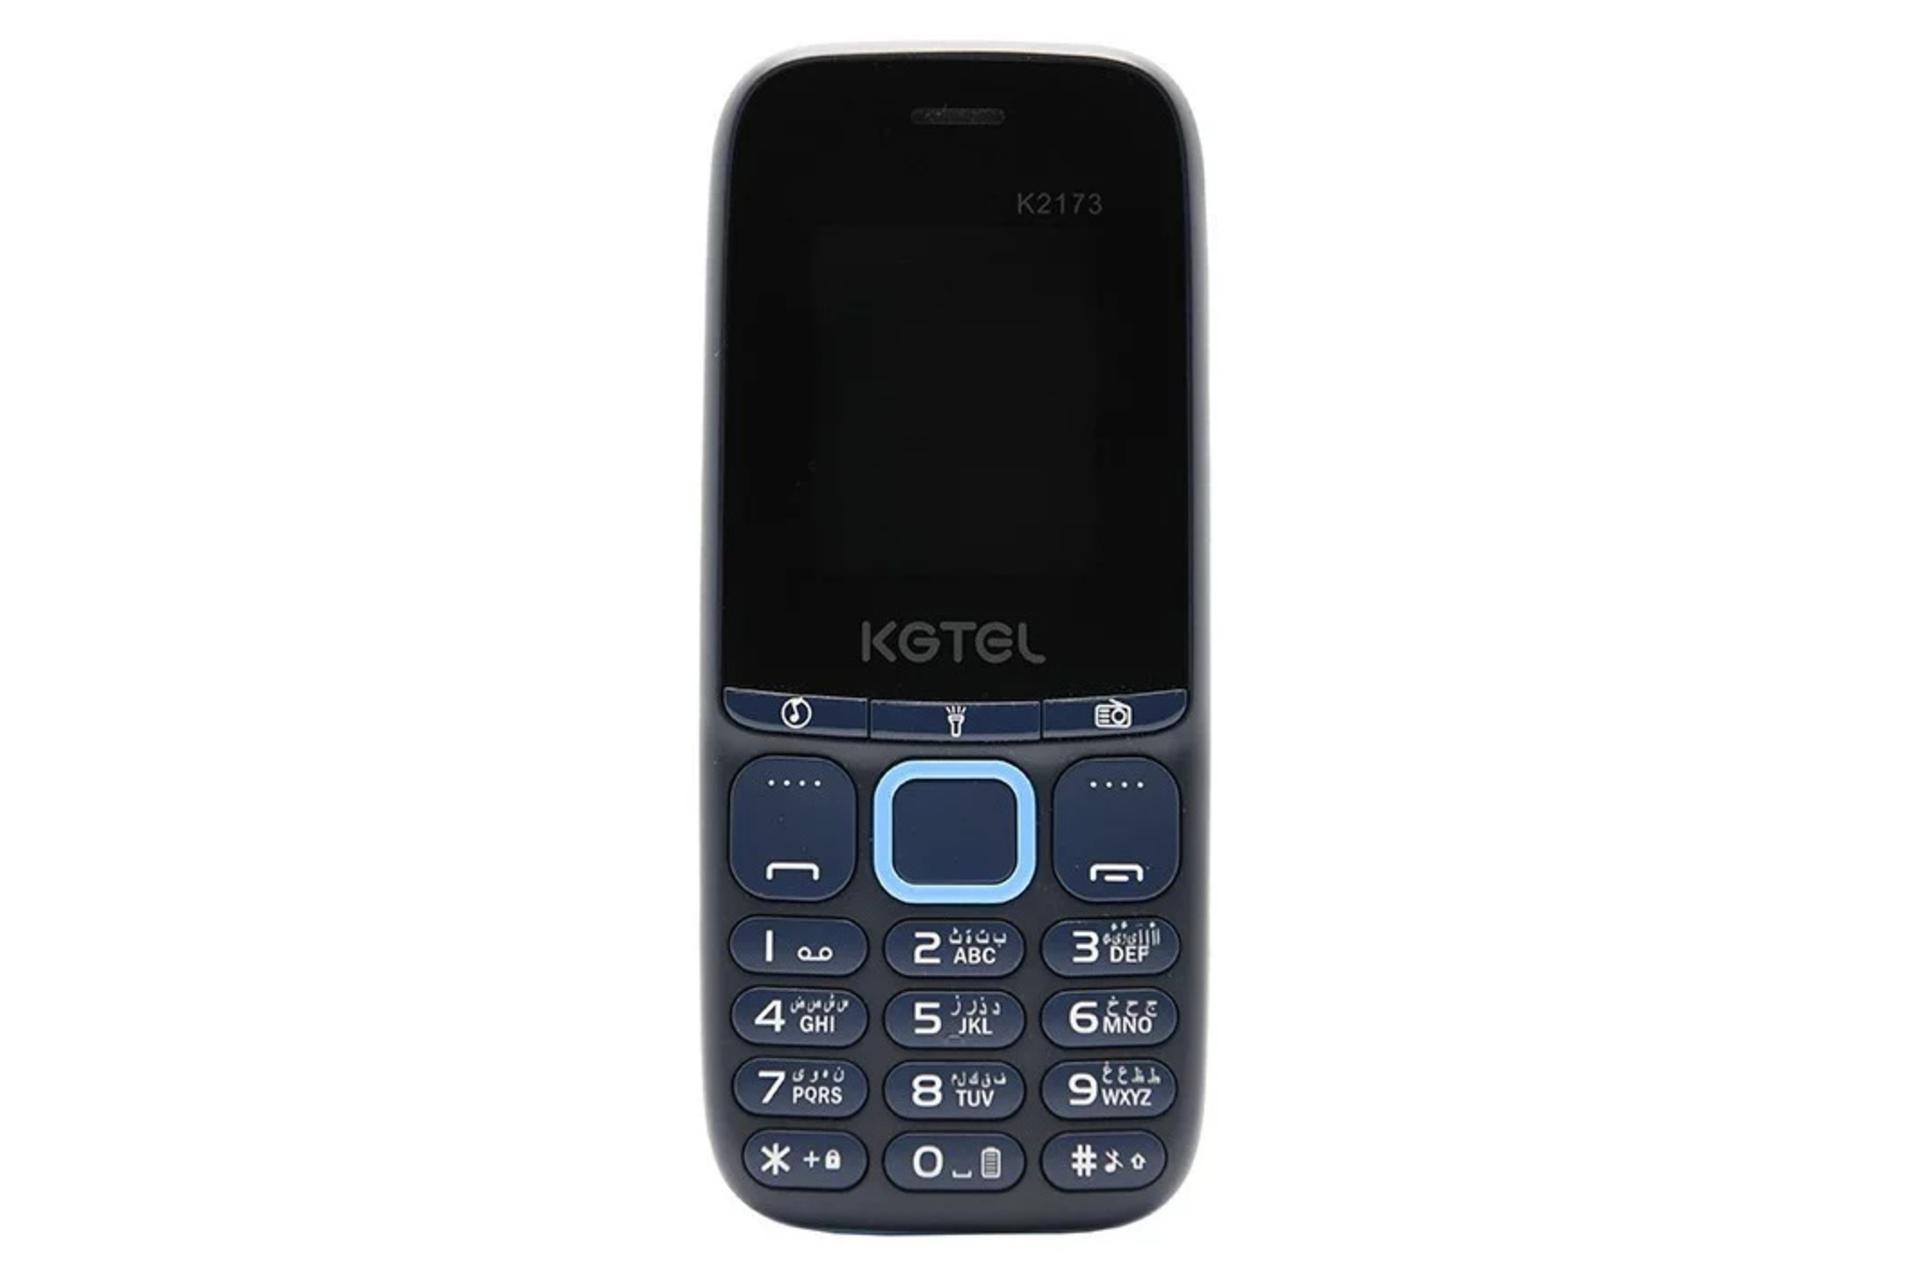 گوشی موبایل کاجیتل KGTEL K2173 آبی